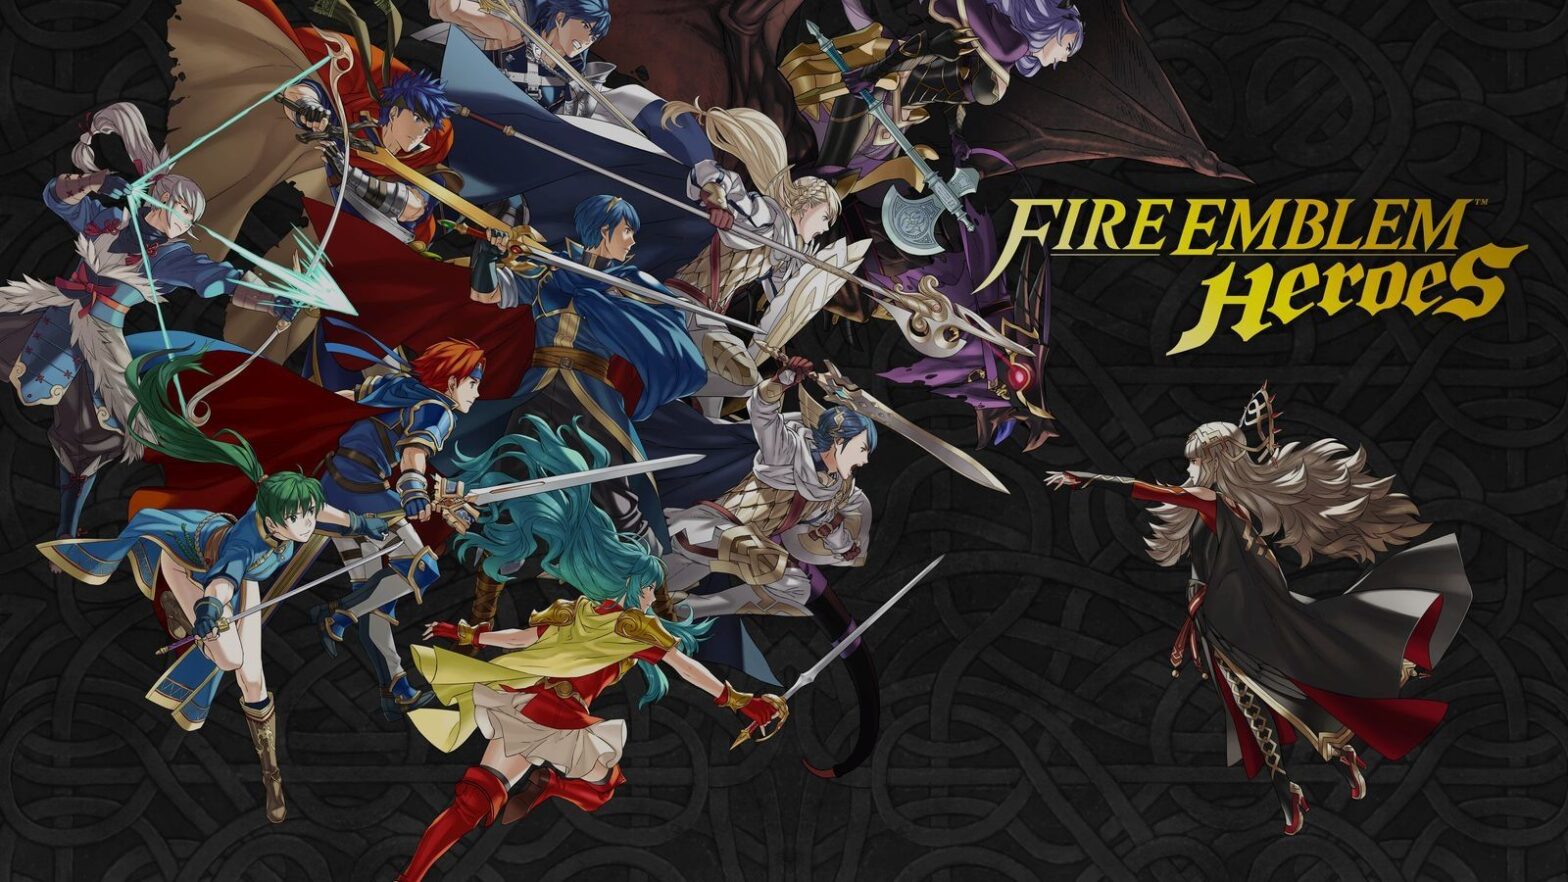 le jeu mobile a-t-il finalement du bon ? Fire Emblem Heroes redonne espoir